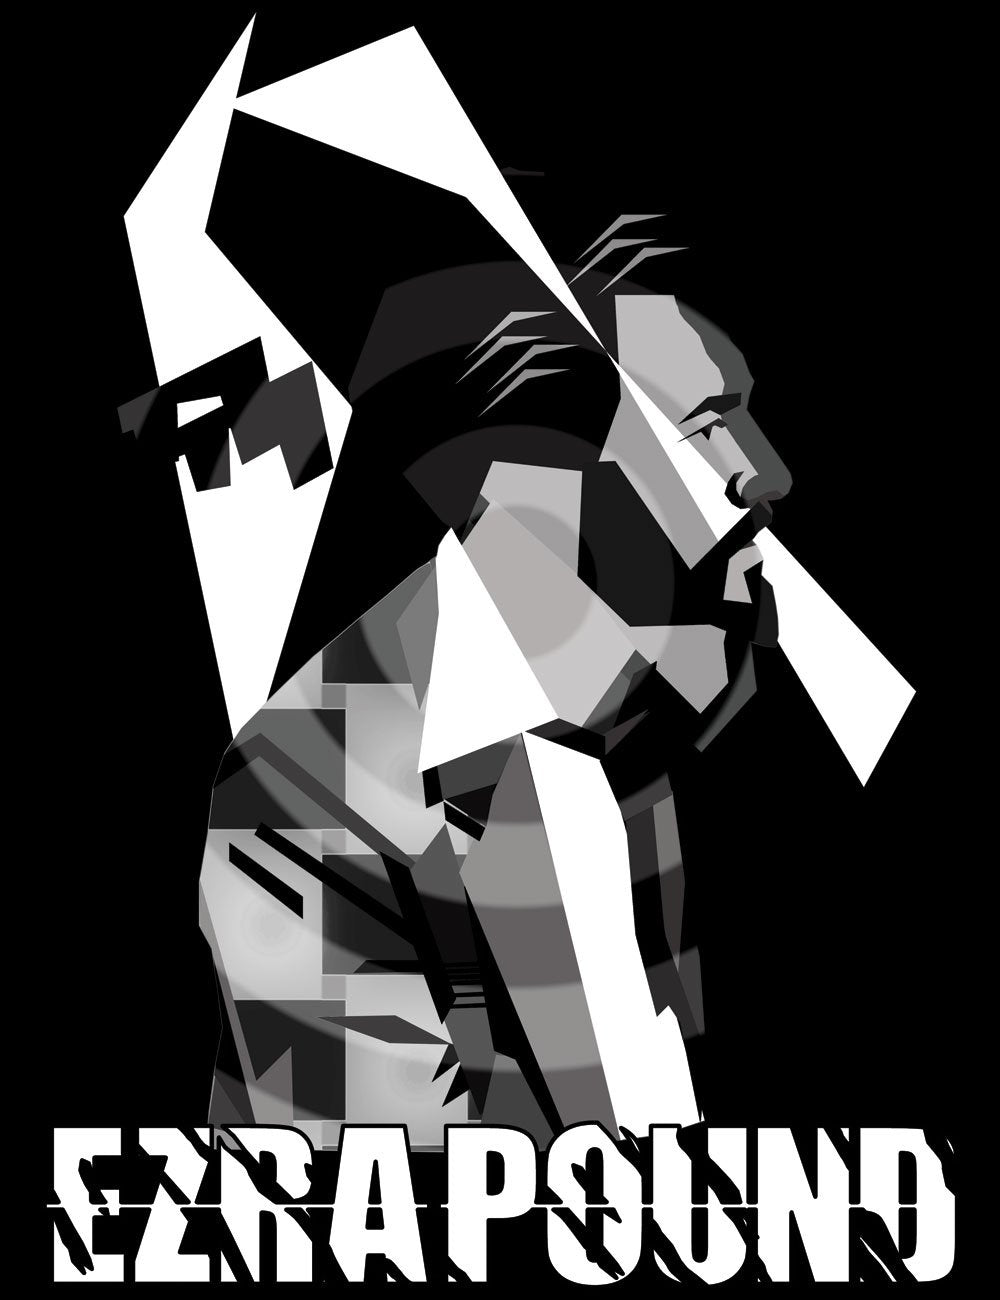 Ezra Pound Vorticist T-Shirt